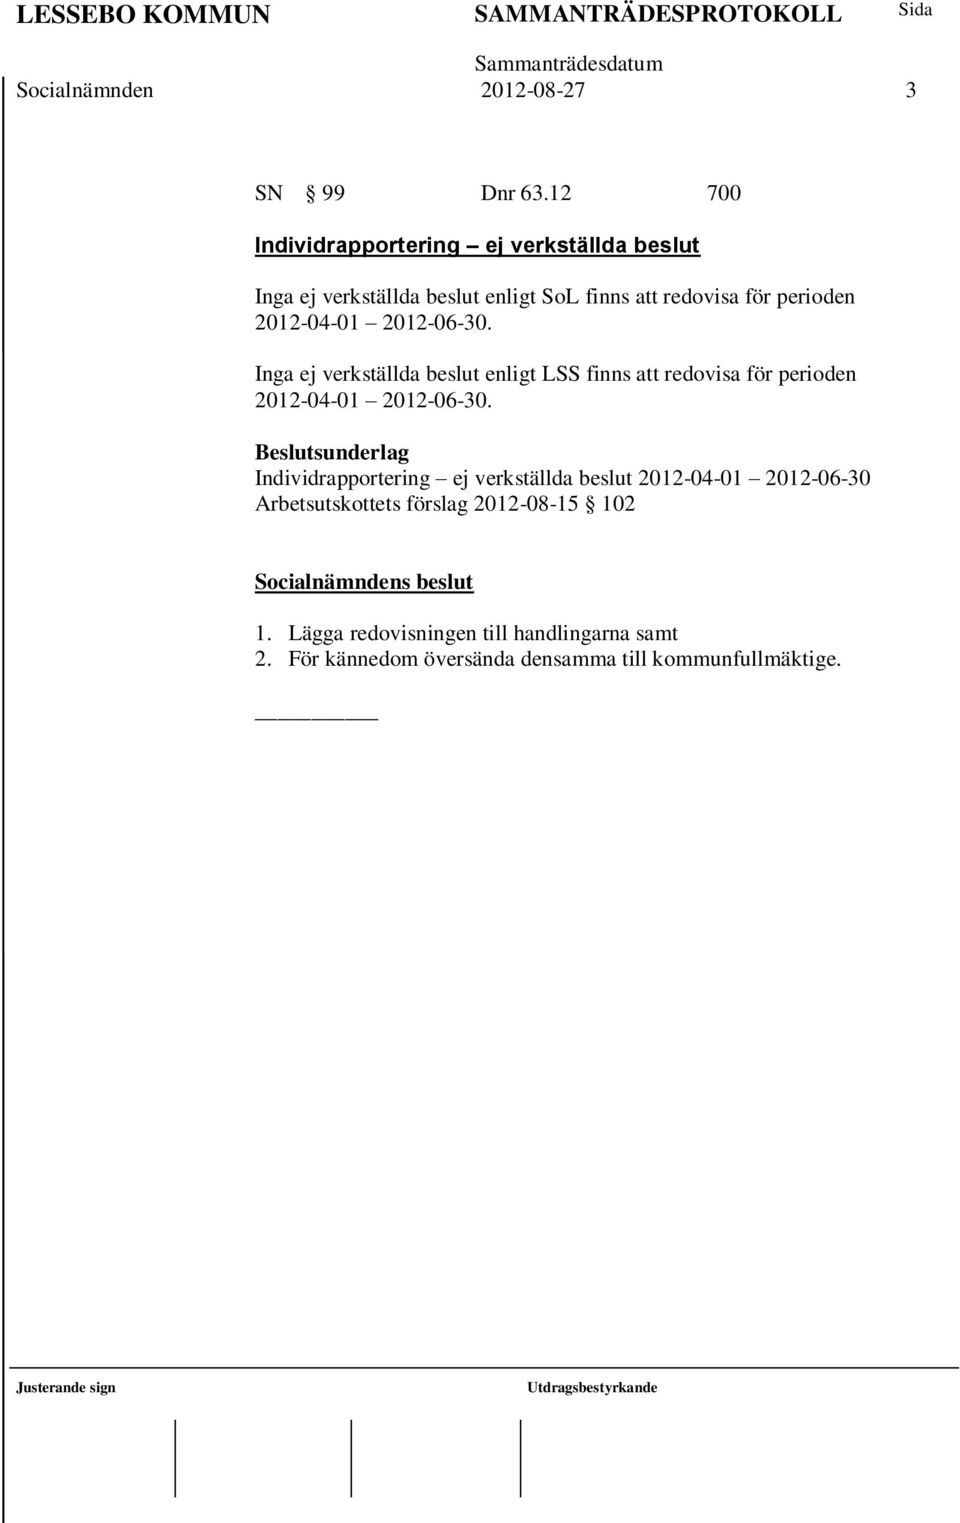 2012-04-01 2012-06-30. Inga ej verkställda beslut enligt LSS finns att redovisa för perioden 2012-04-01 2012-06-30.